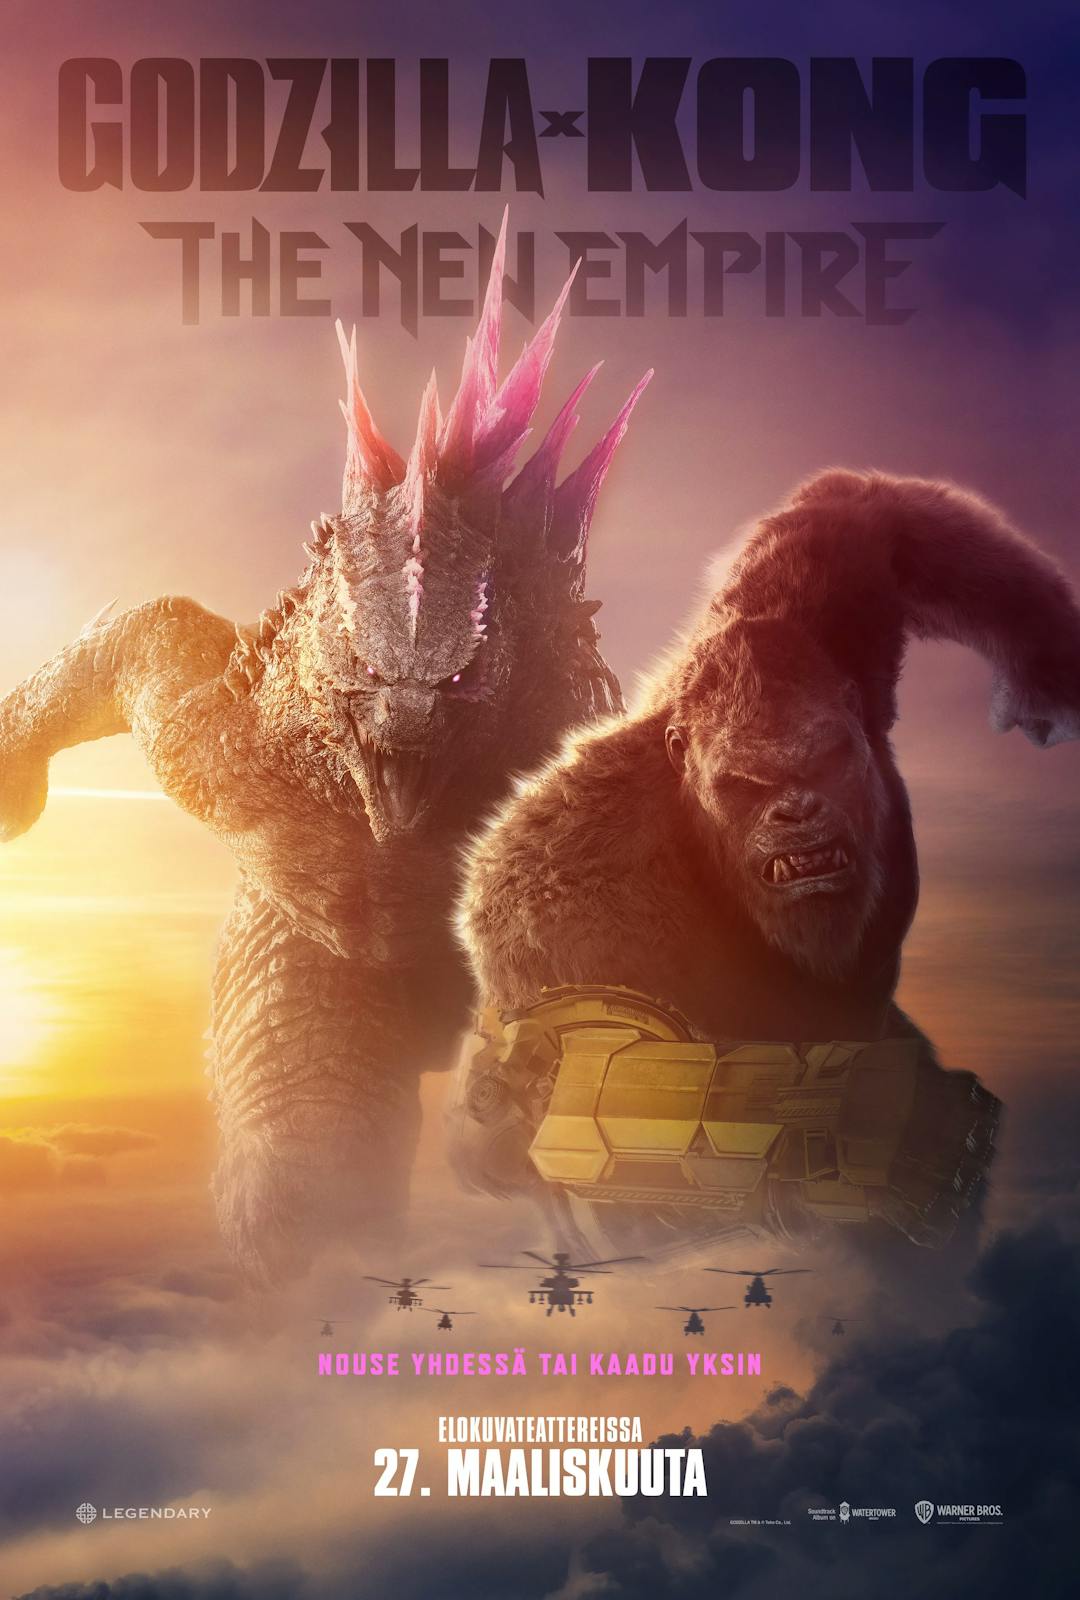 Godzilla x Kong: The New Empire on eeppistä rymistelyä ilman syvempää tarinaa